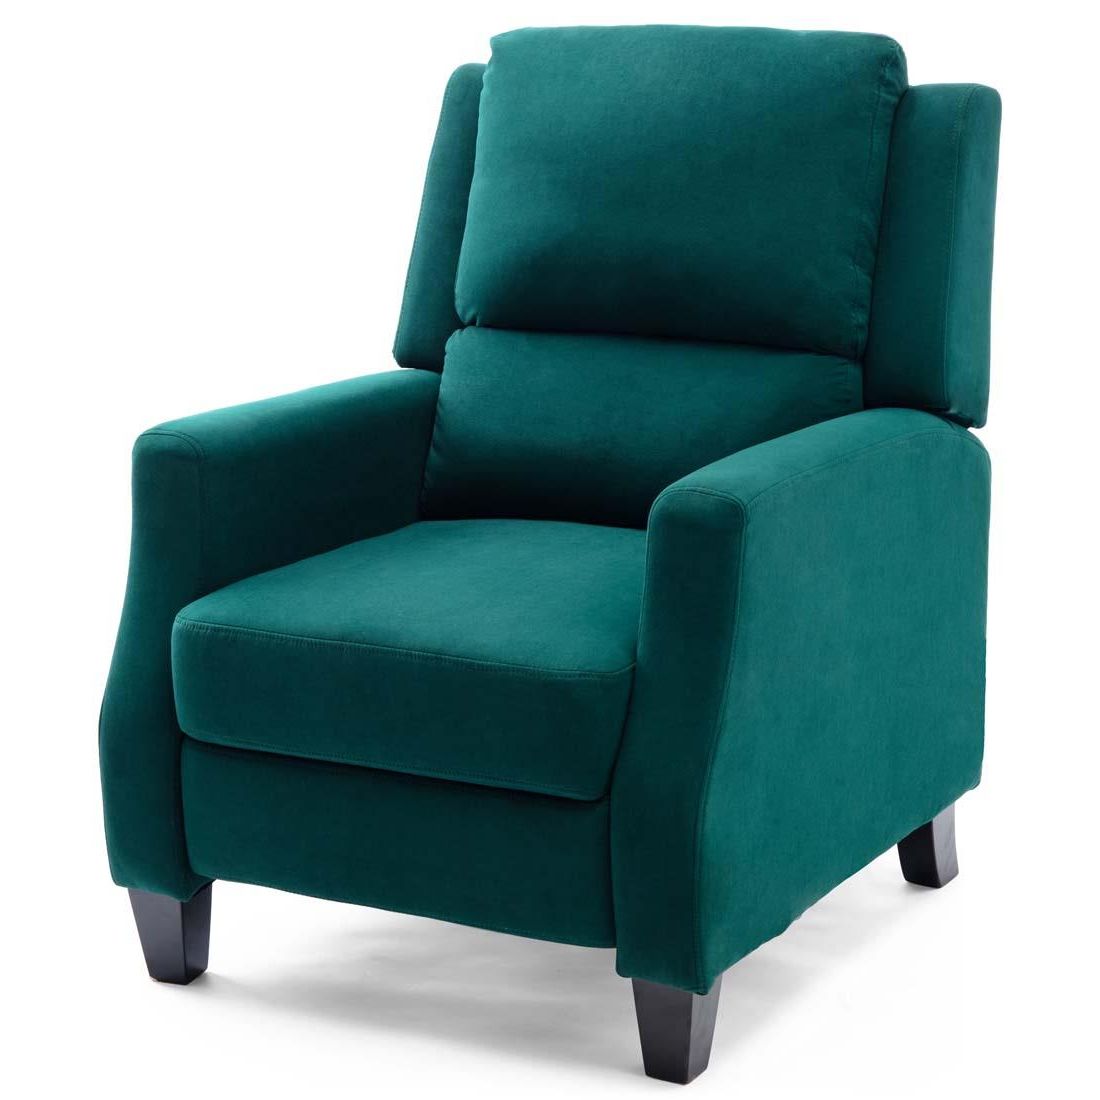 Burley Velvet Fabric Modern Accent Recliner Armchair Sofa Lounge Chair Inside Modern Velvet Upholstered Recliner Chairs (Gallery 11 of 20)